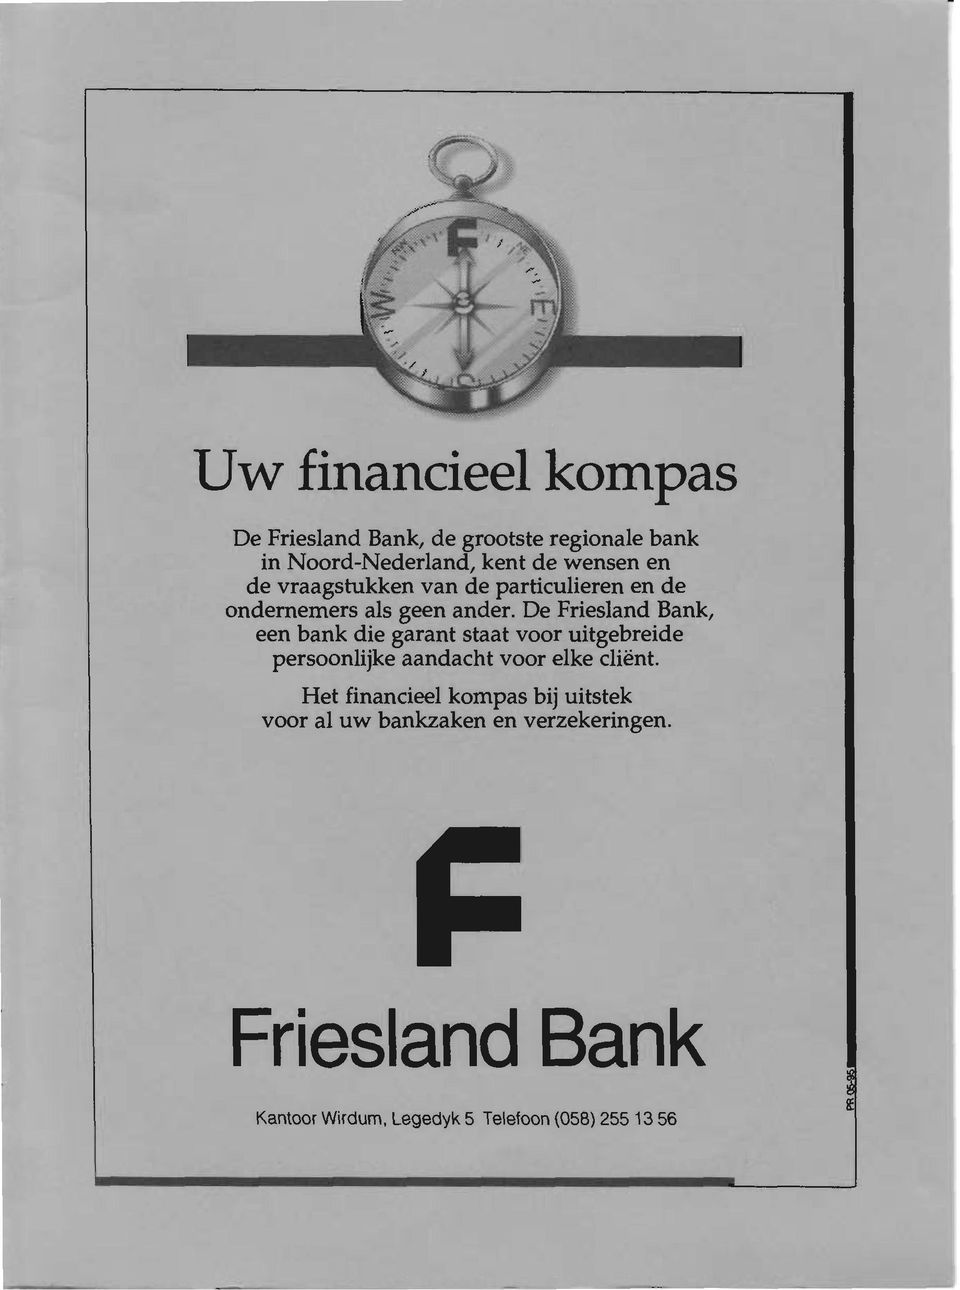 De Friesland Bank, een bank die garant staat voor uitgebreide persoonlijke aandacht voor elke cliënt.